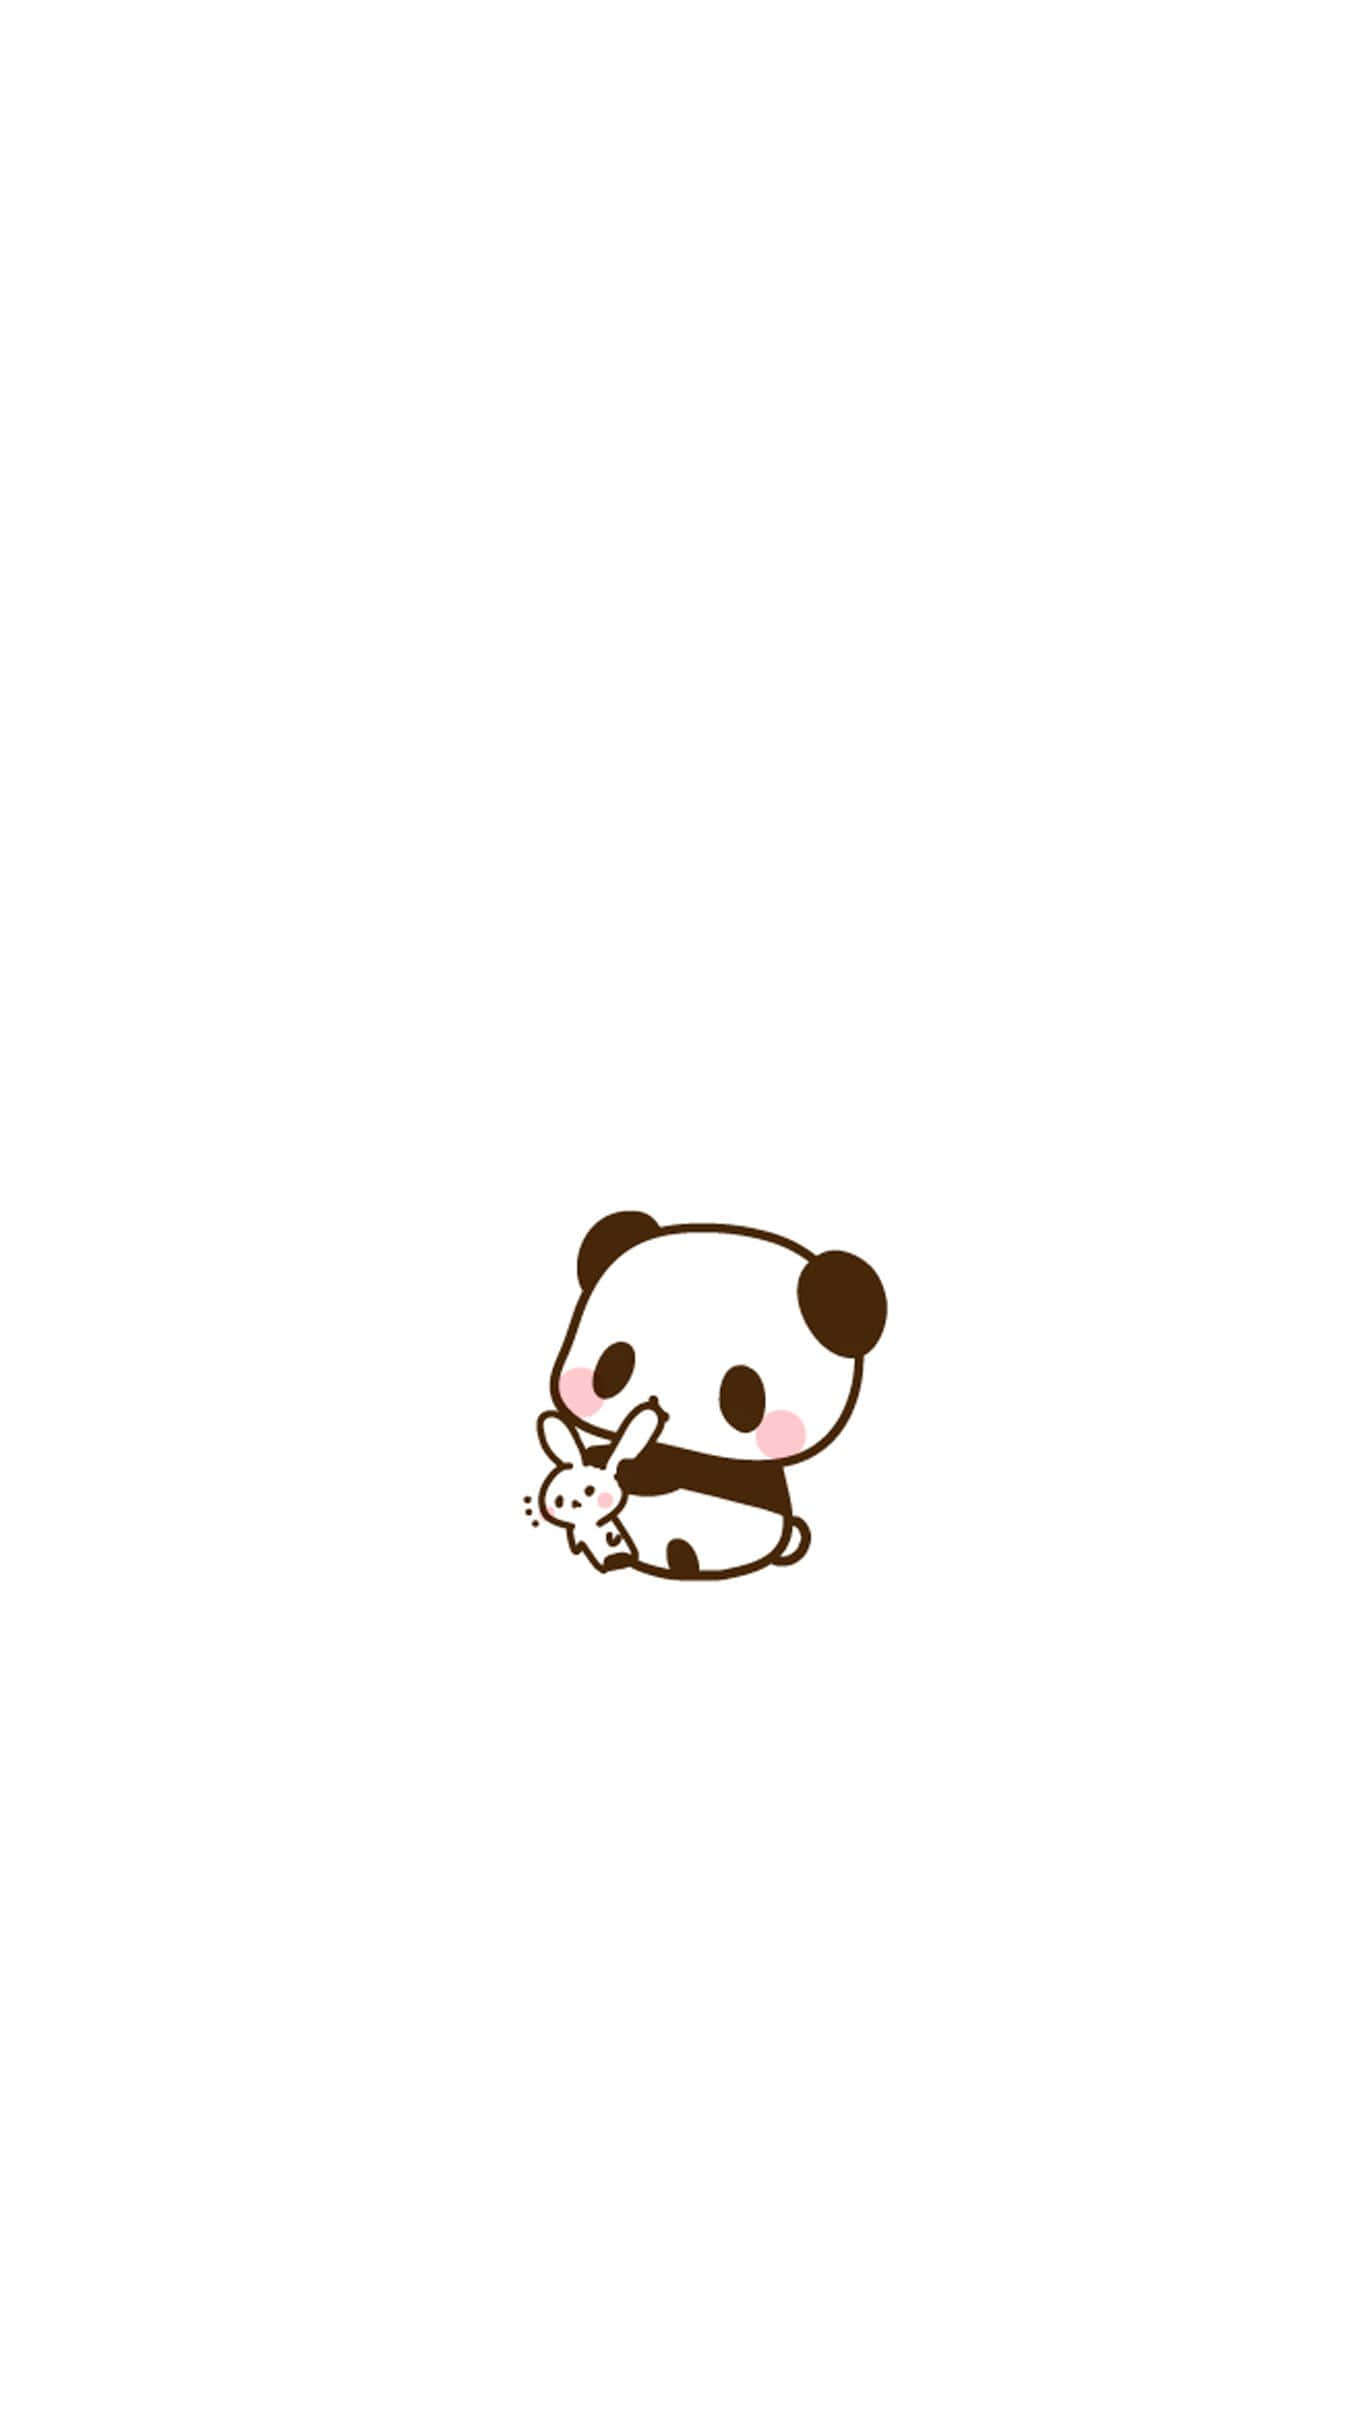 Unoso Panda Está Sentado Sobre Un Fondo Blanco.